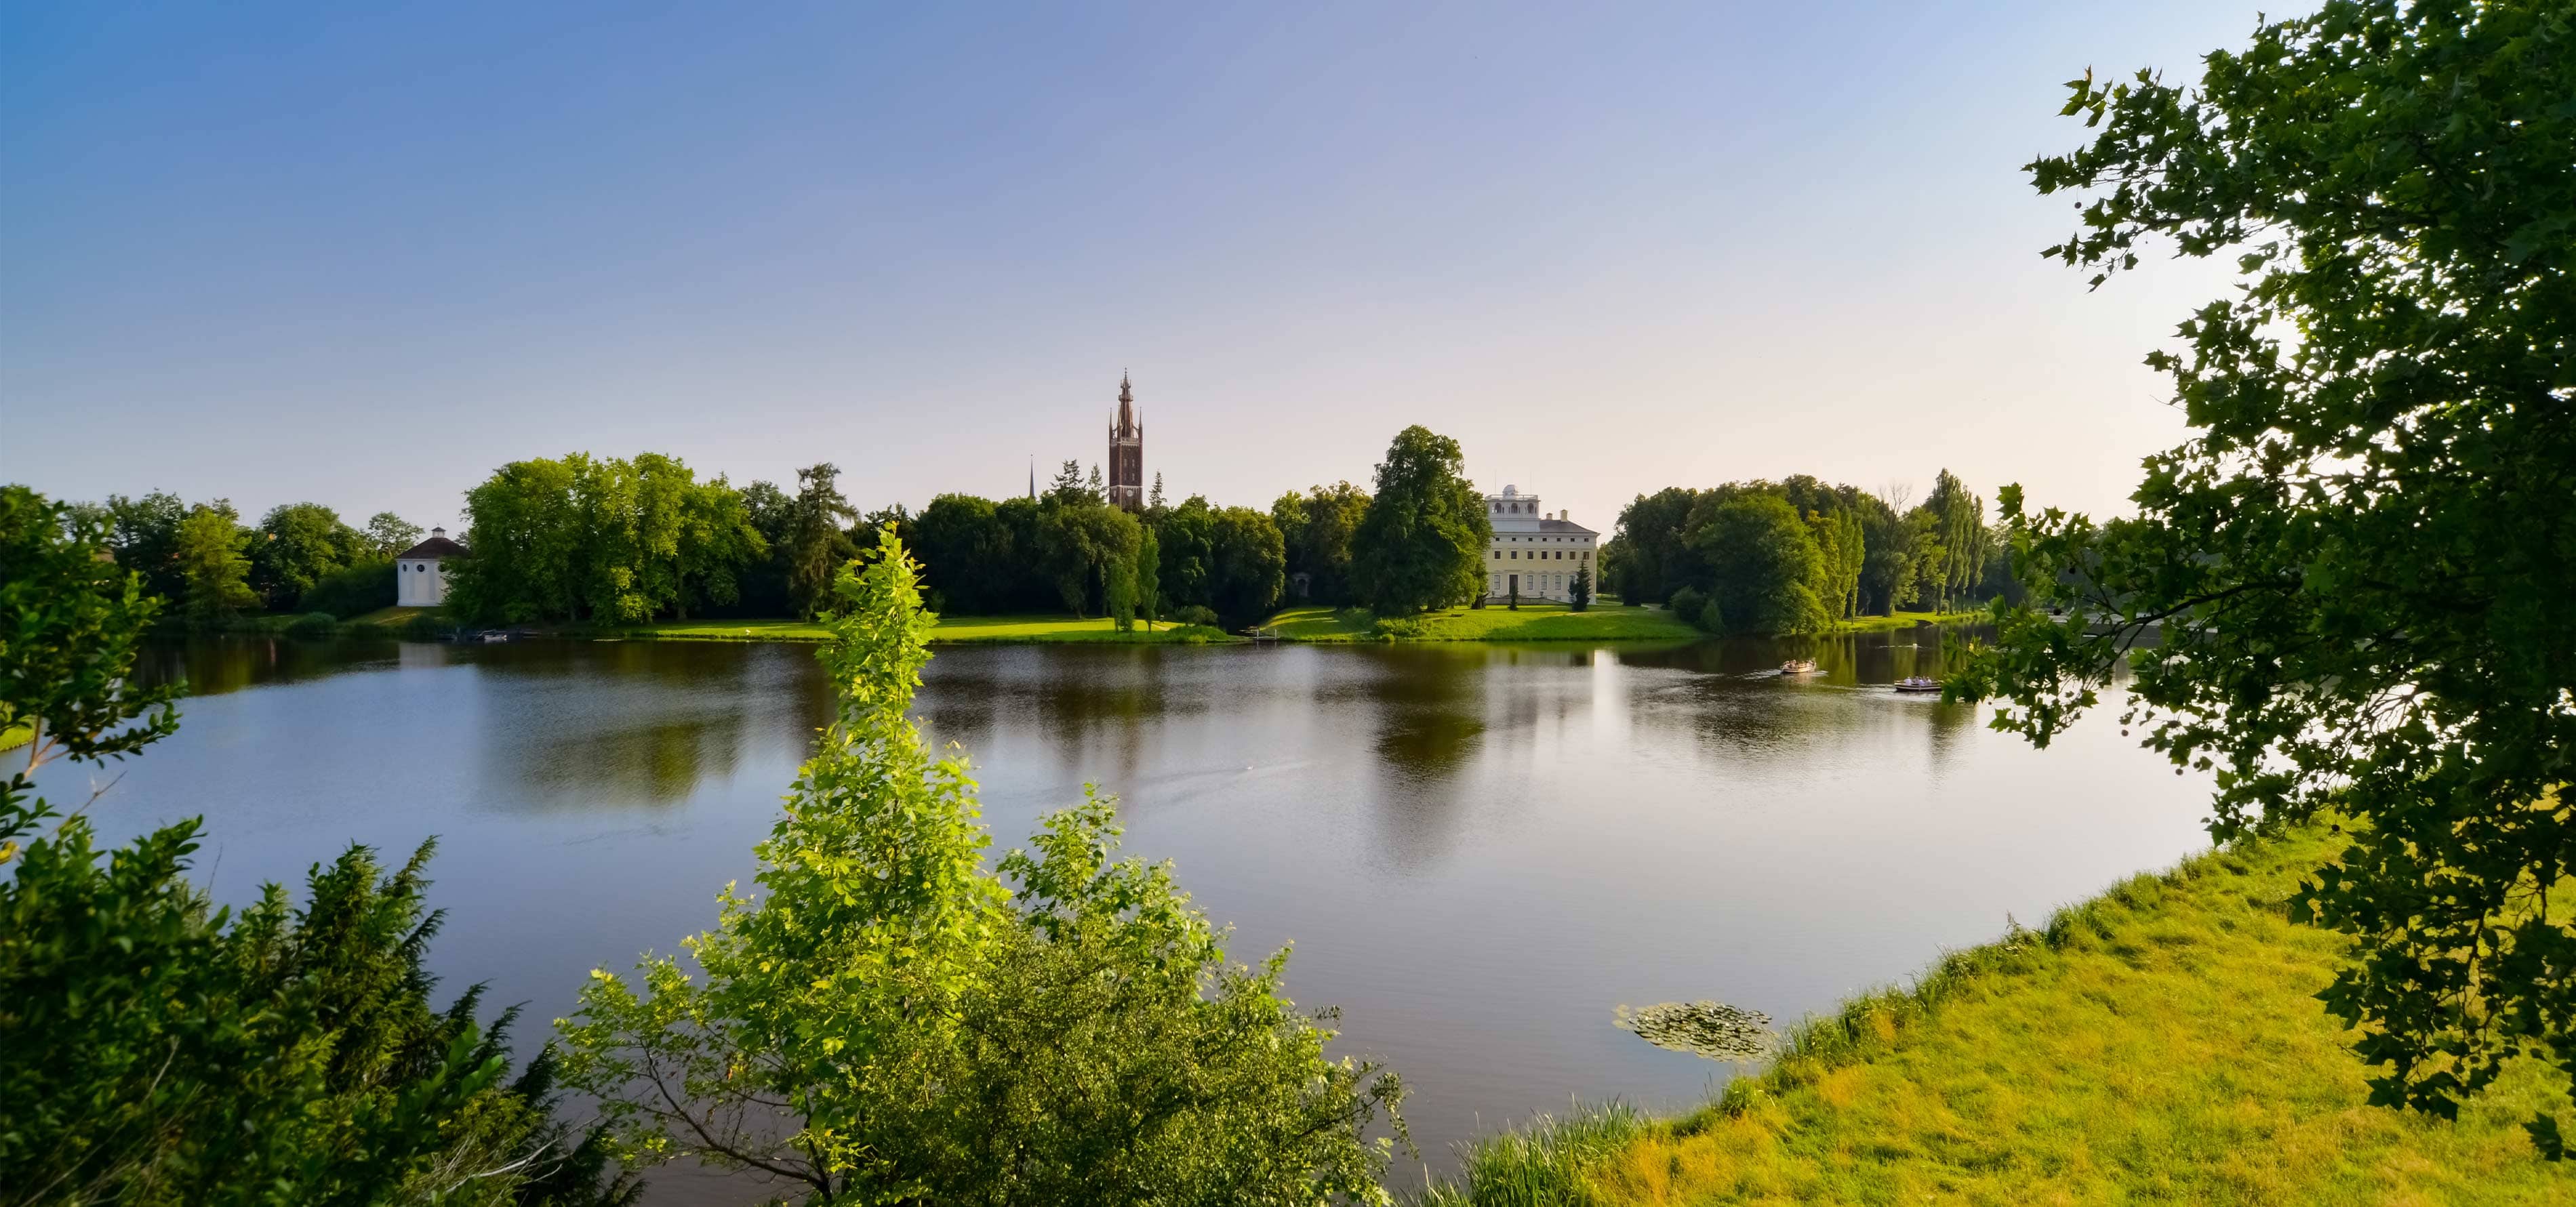 Foto vom Gartenreich Dessau-Wörlitz, einem beliebten Ausflugsziel mit imposanten Gebäuden und einem großen See in der Mitte